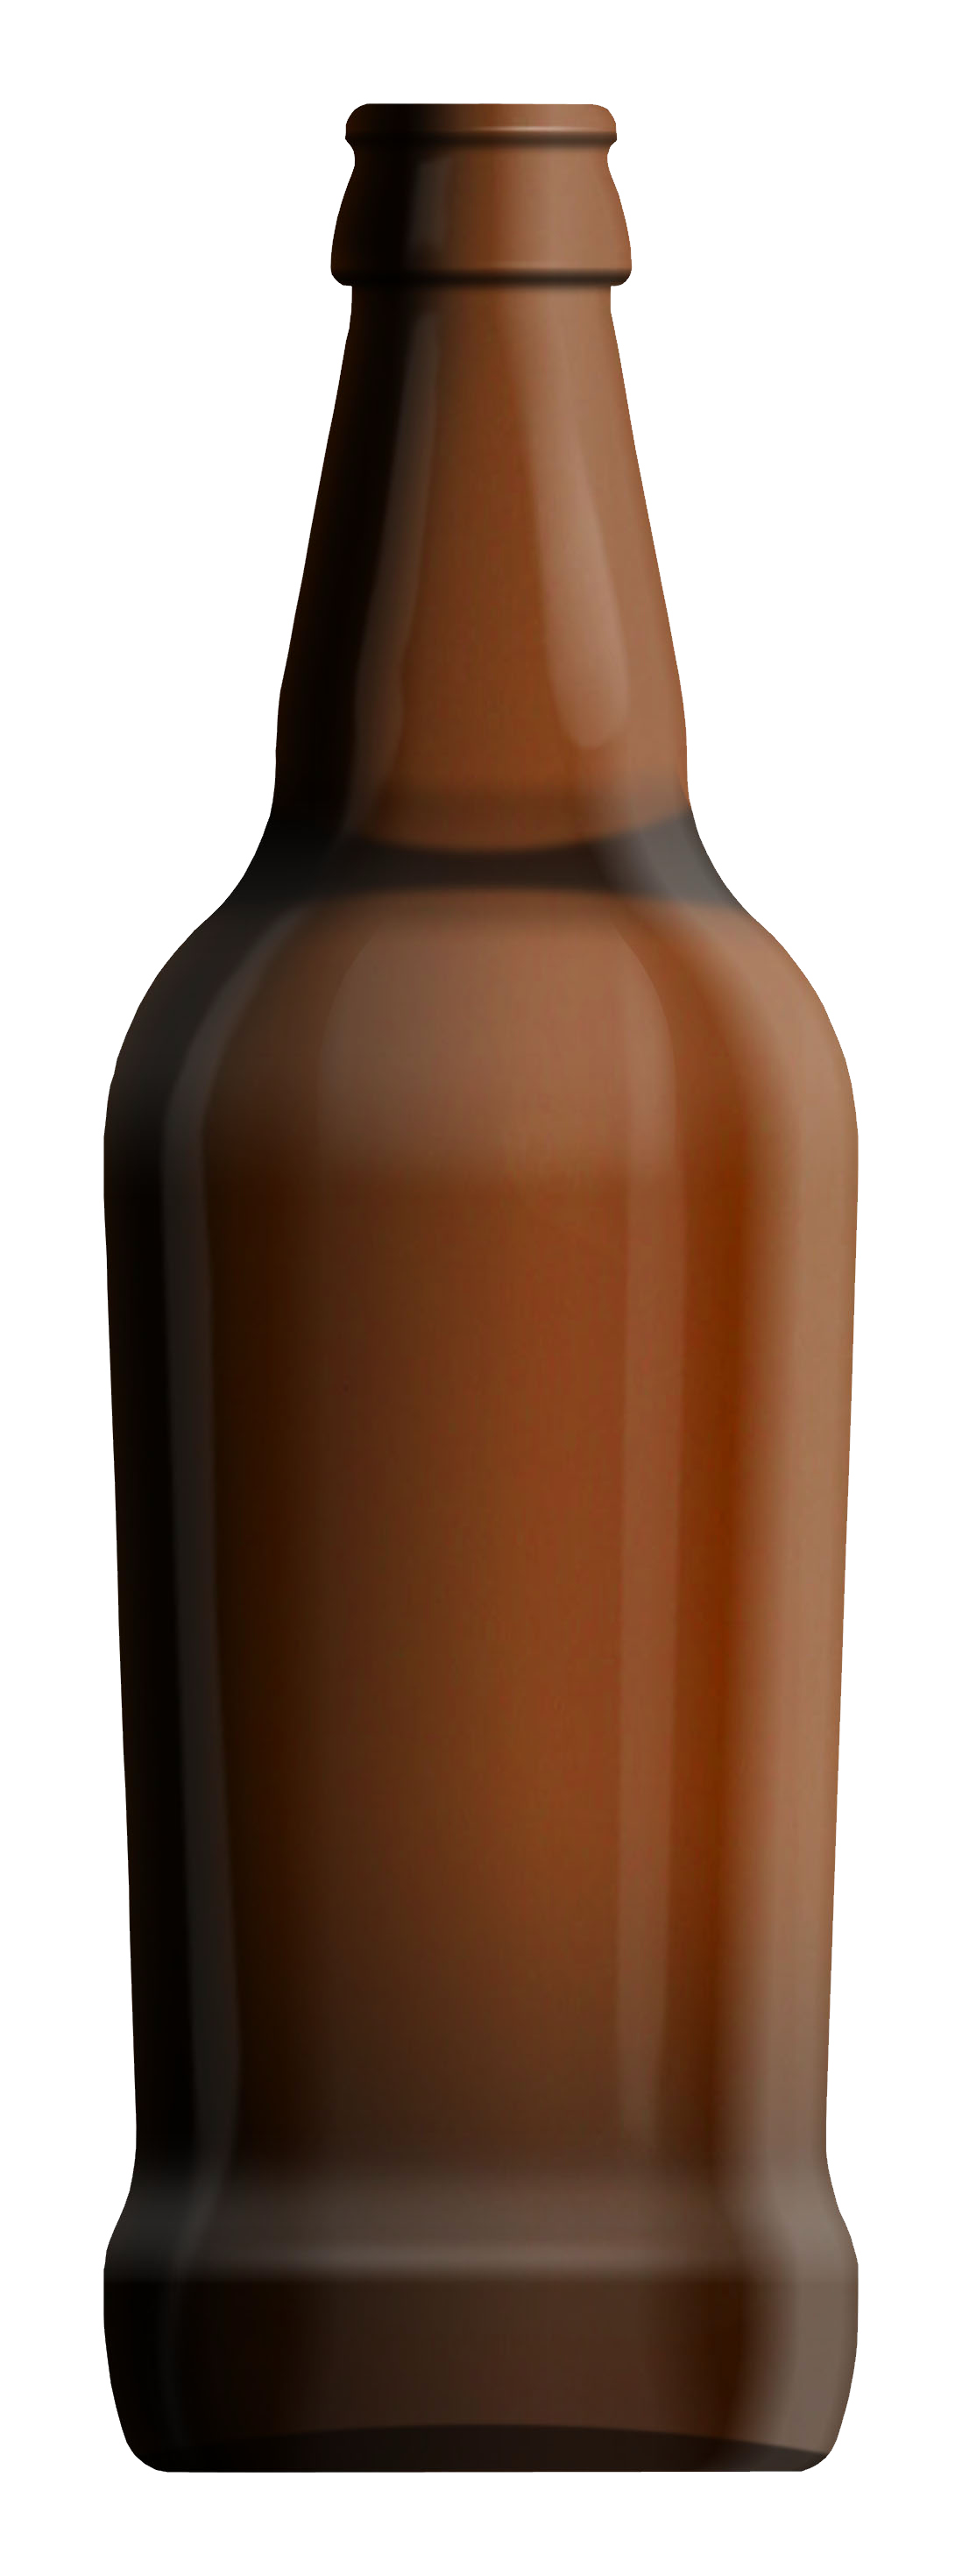 Bottle PNG Image